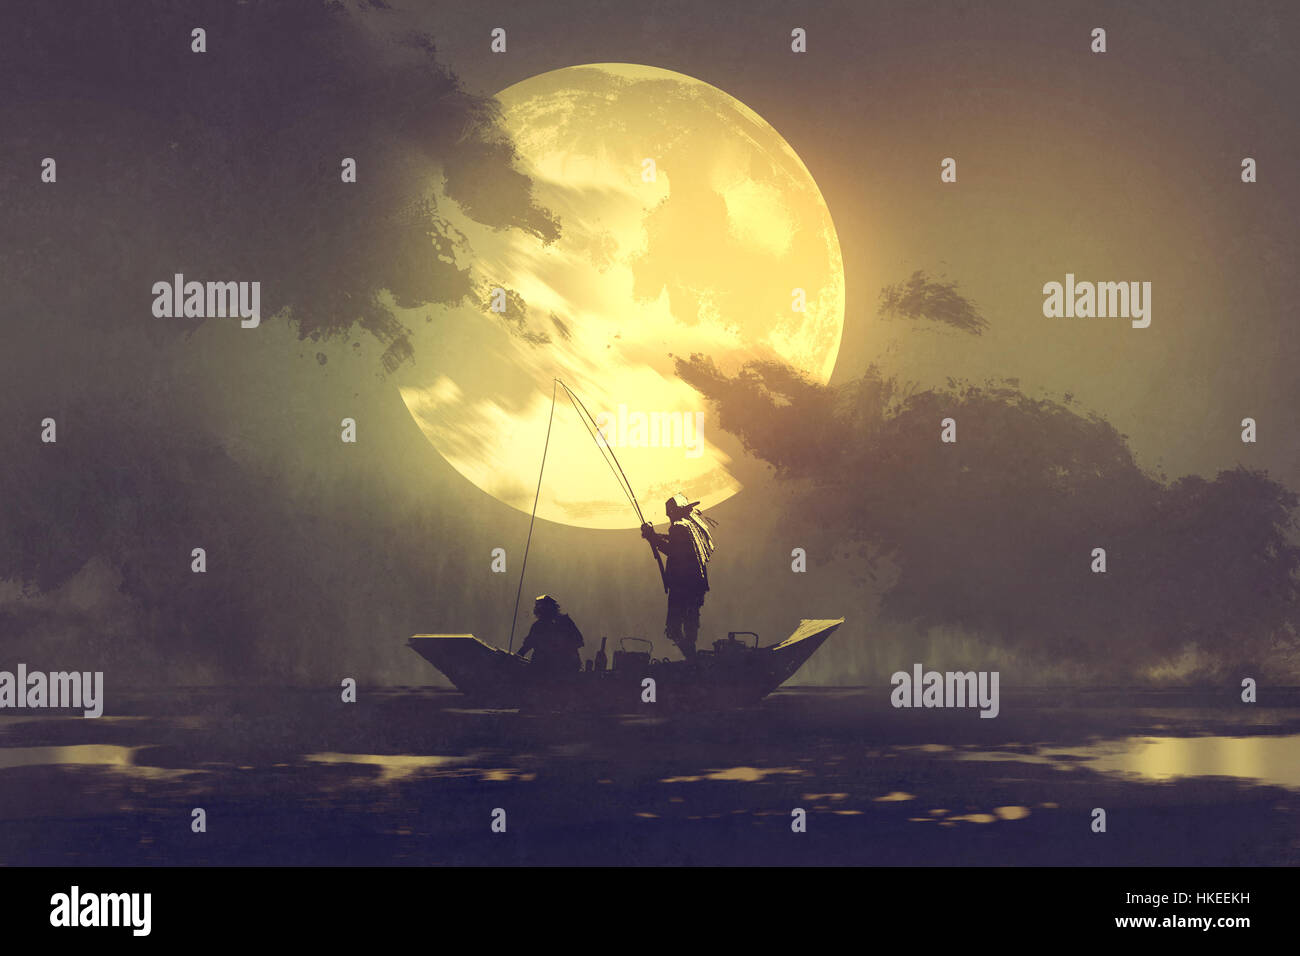 Silhouette de pêcheurs avec la canne à pêche sur le bateau et grande lune on background,illustration peinture Banque D'Images